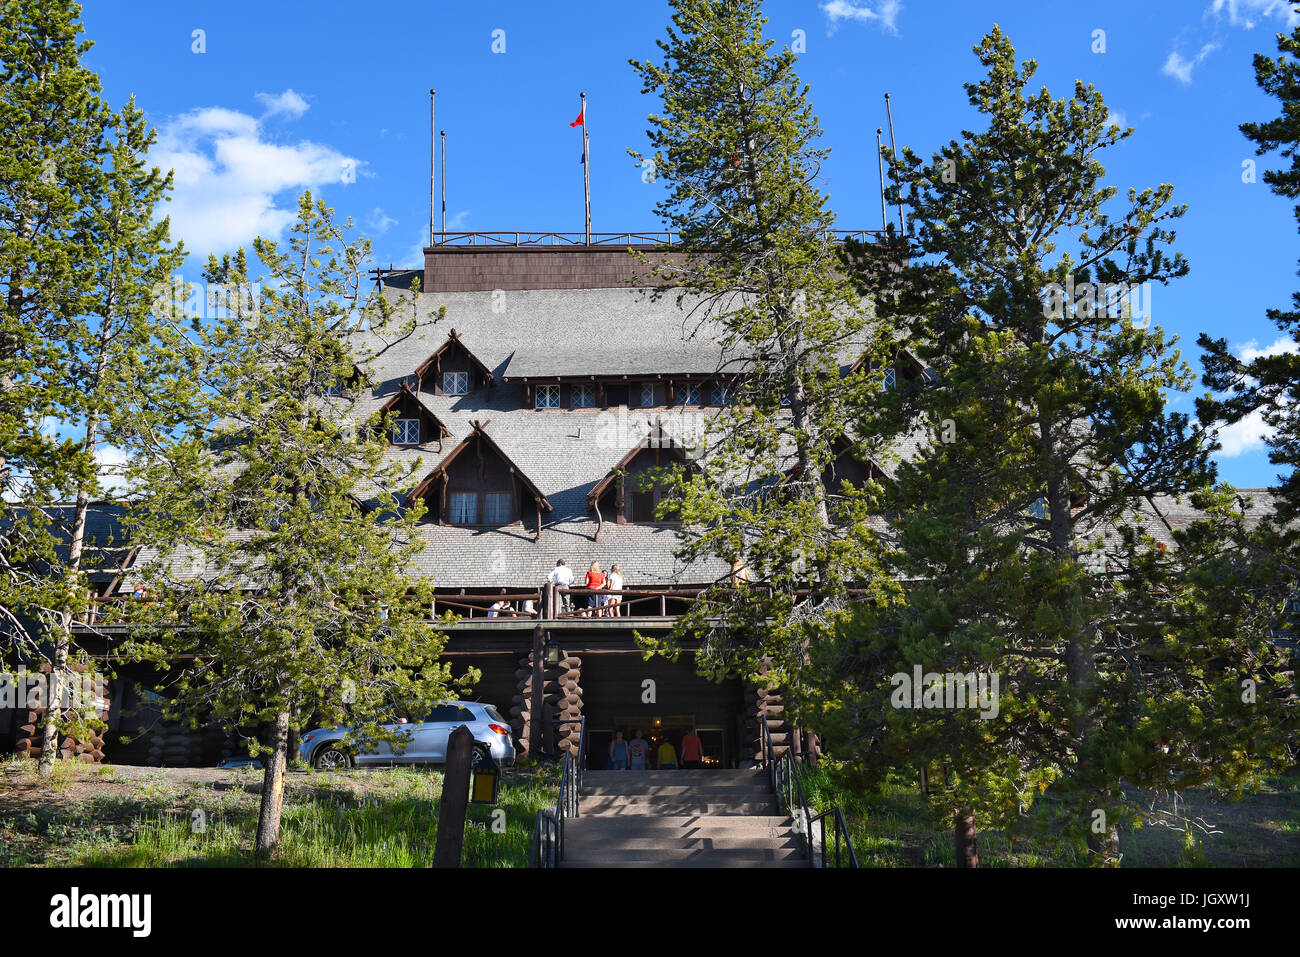 YELLOWSTONE-Nationalpark, WYOMING - 25 Juni 21017: Old Faithful Inn. Eines der berühmtesten und historische Hotels in Yellowstone begann einladend gue Stockfoto